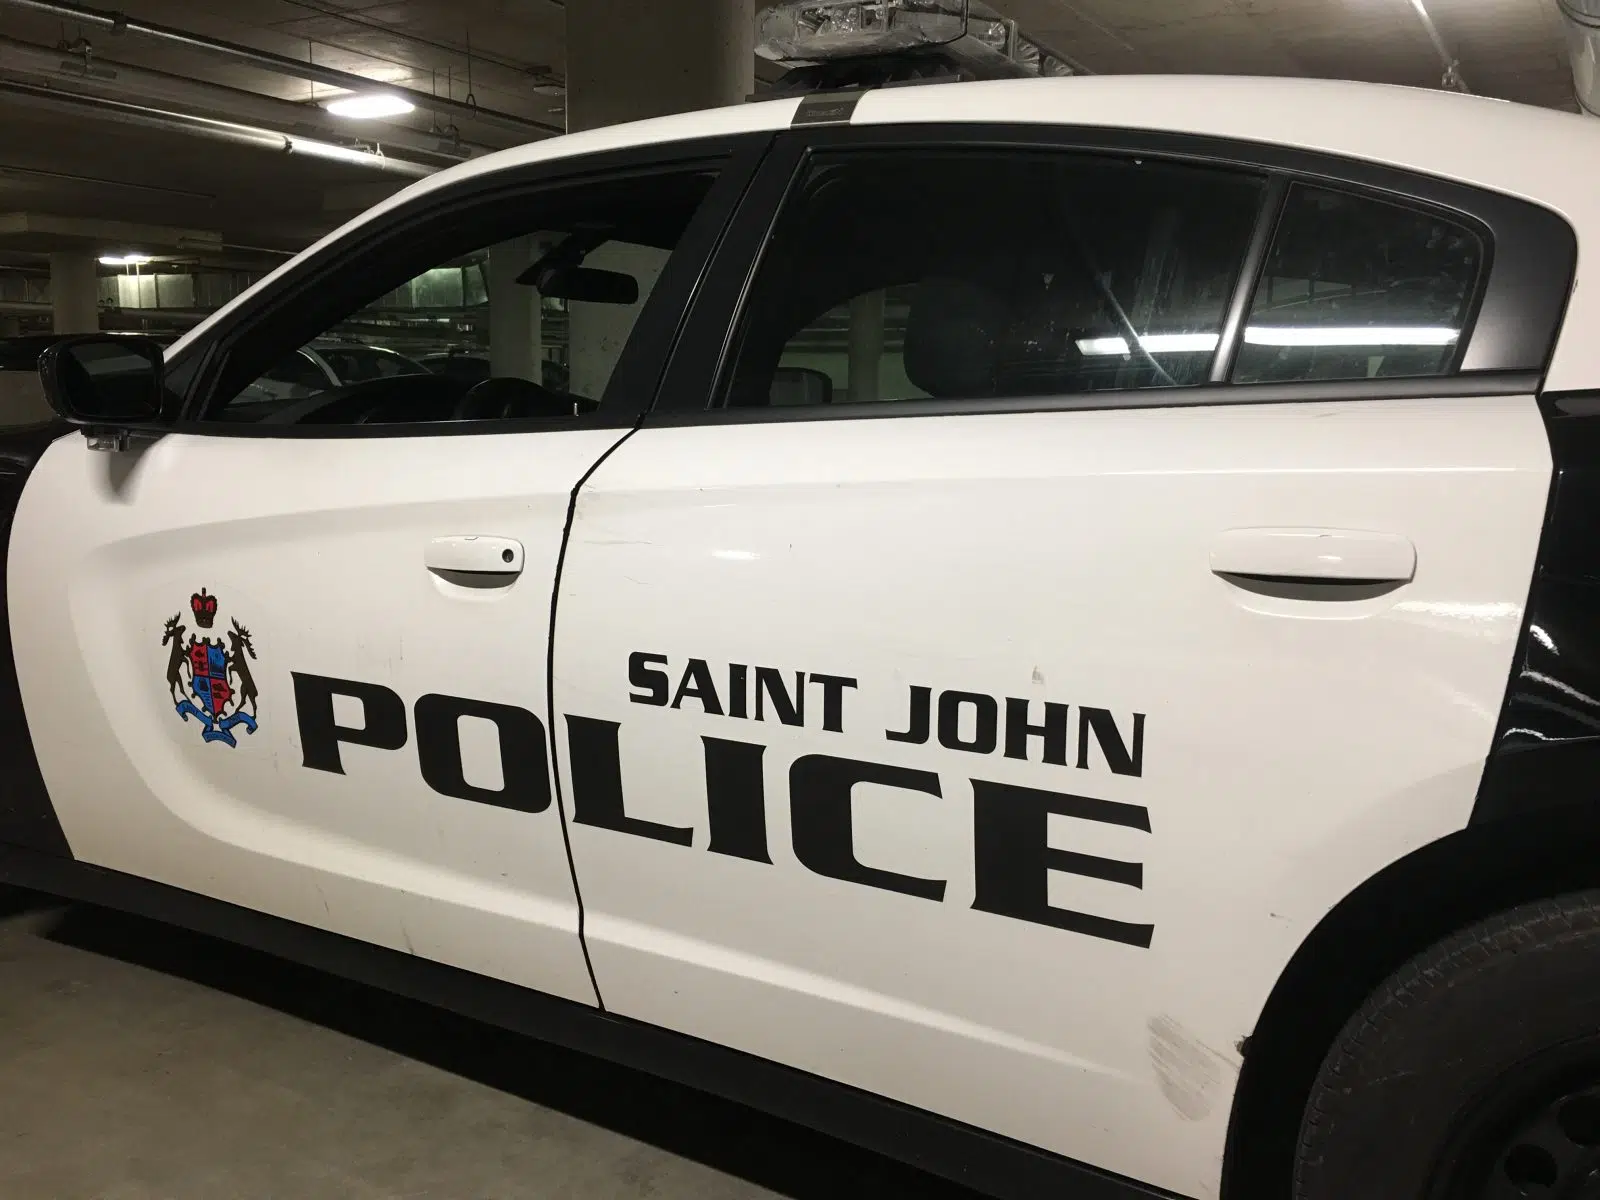 Saint John police make arrest in fraud investigation